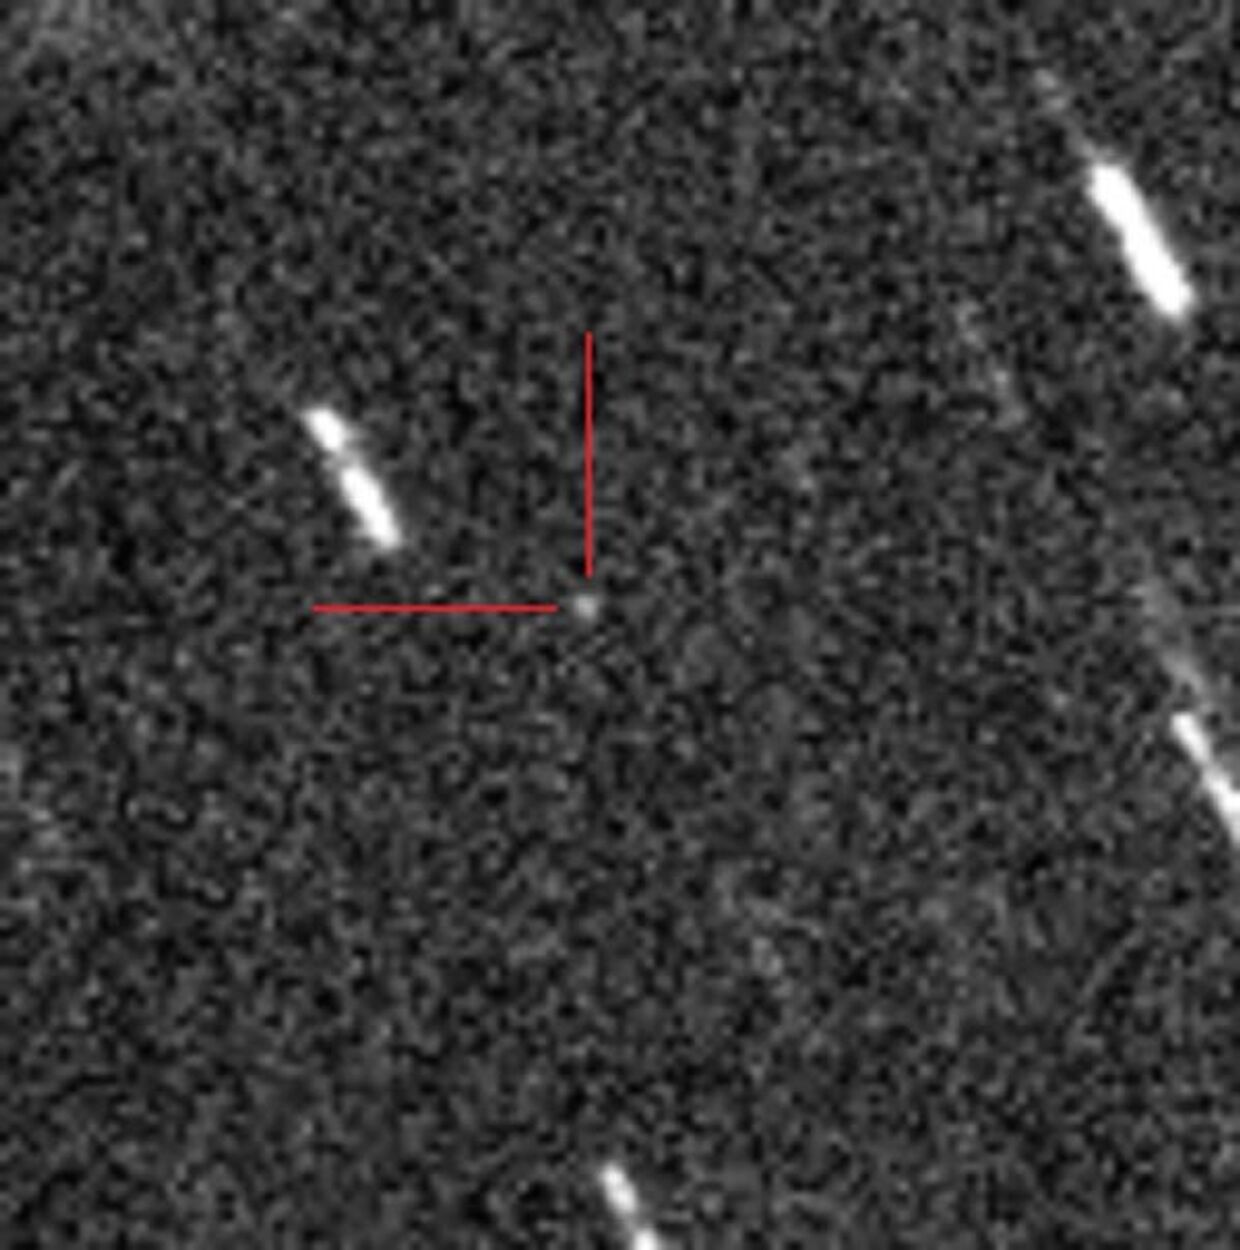 Астероид 2012 DA14 (отмечен красными линиями)